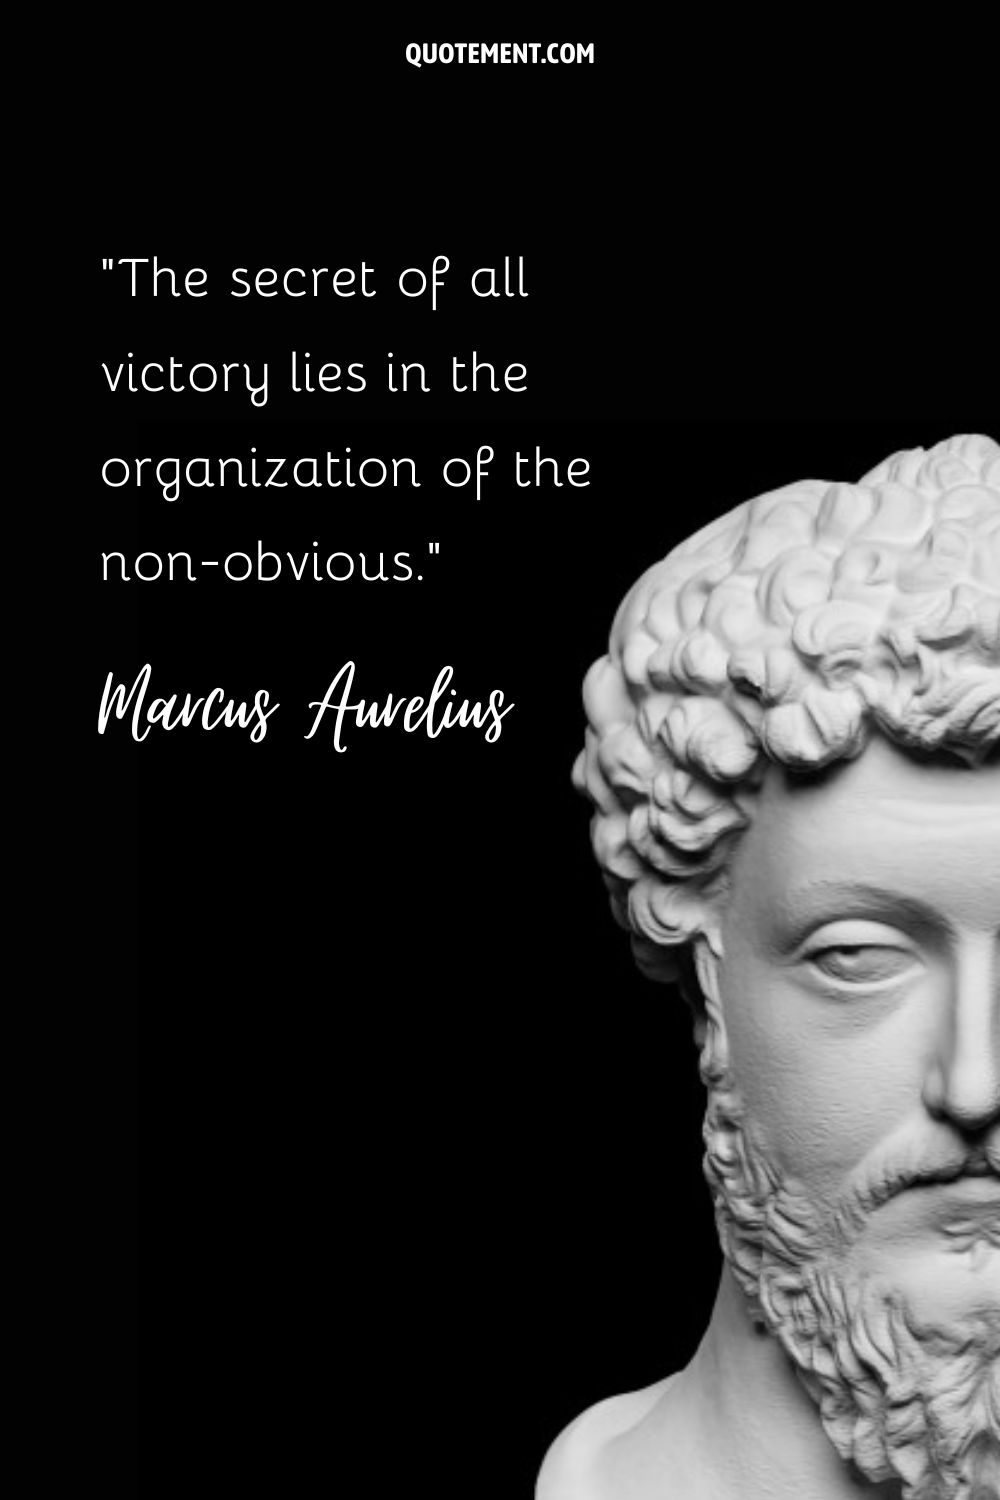 Wise gaze of Marcus Aurelius in sculpture.
